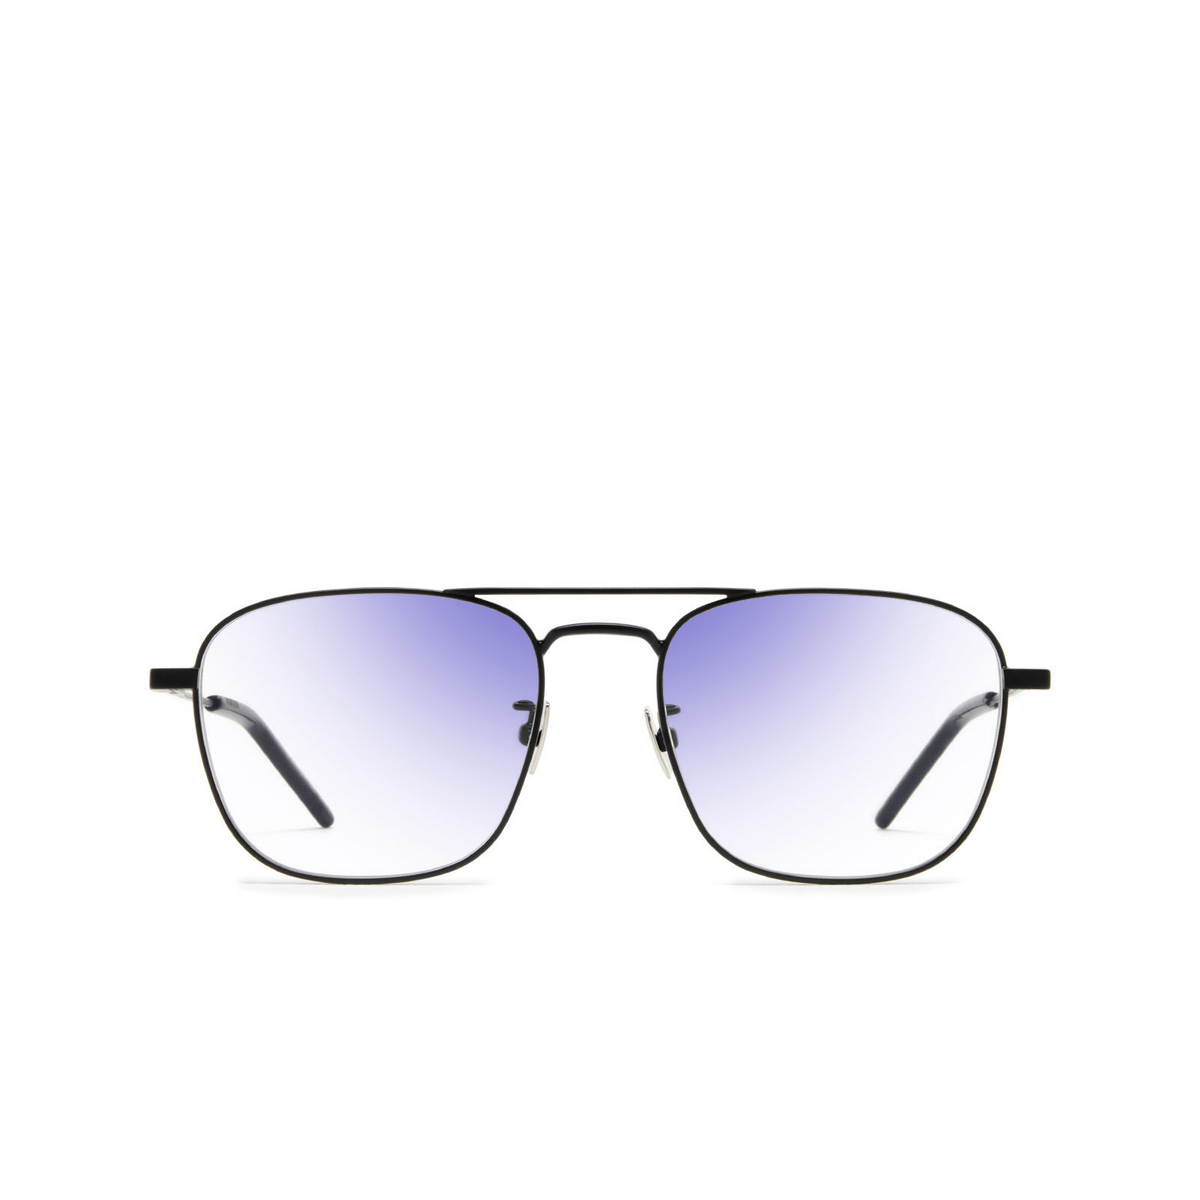 Saint Laurent SL 309 Sunglasses 001 Black - front view